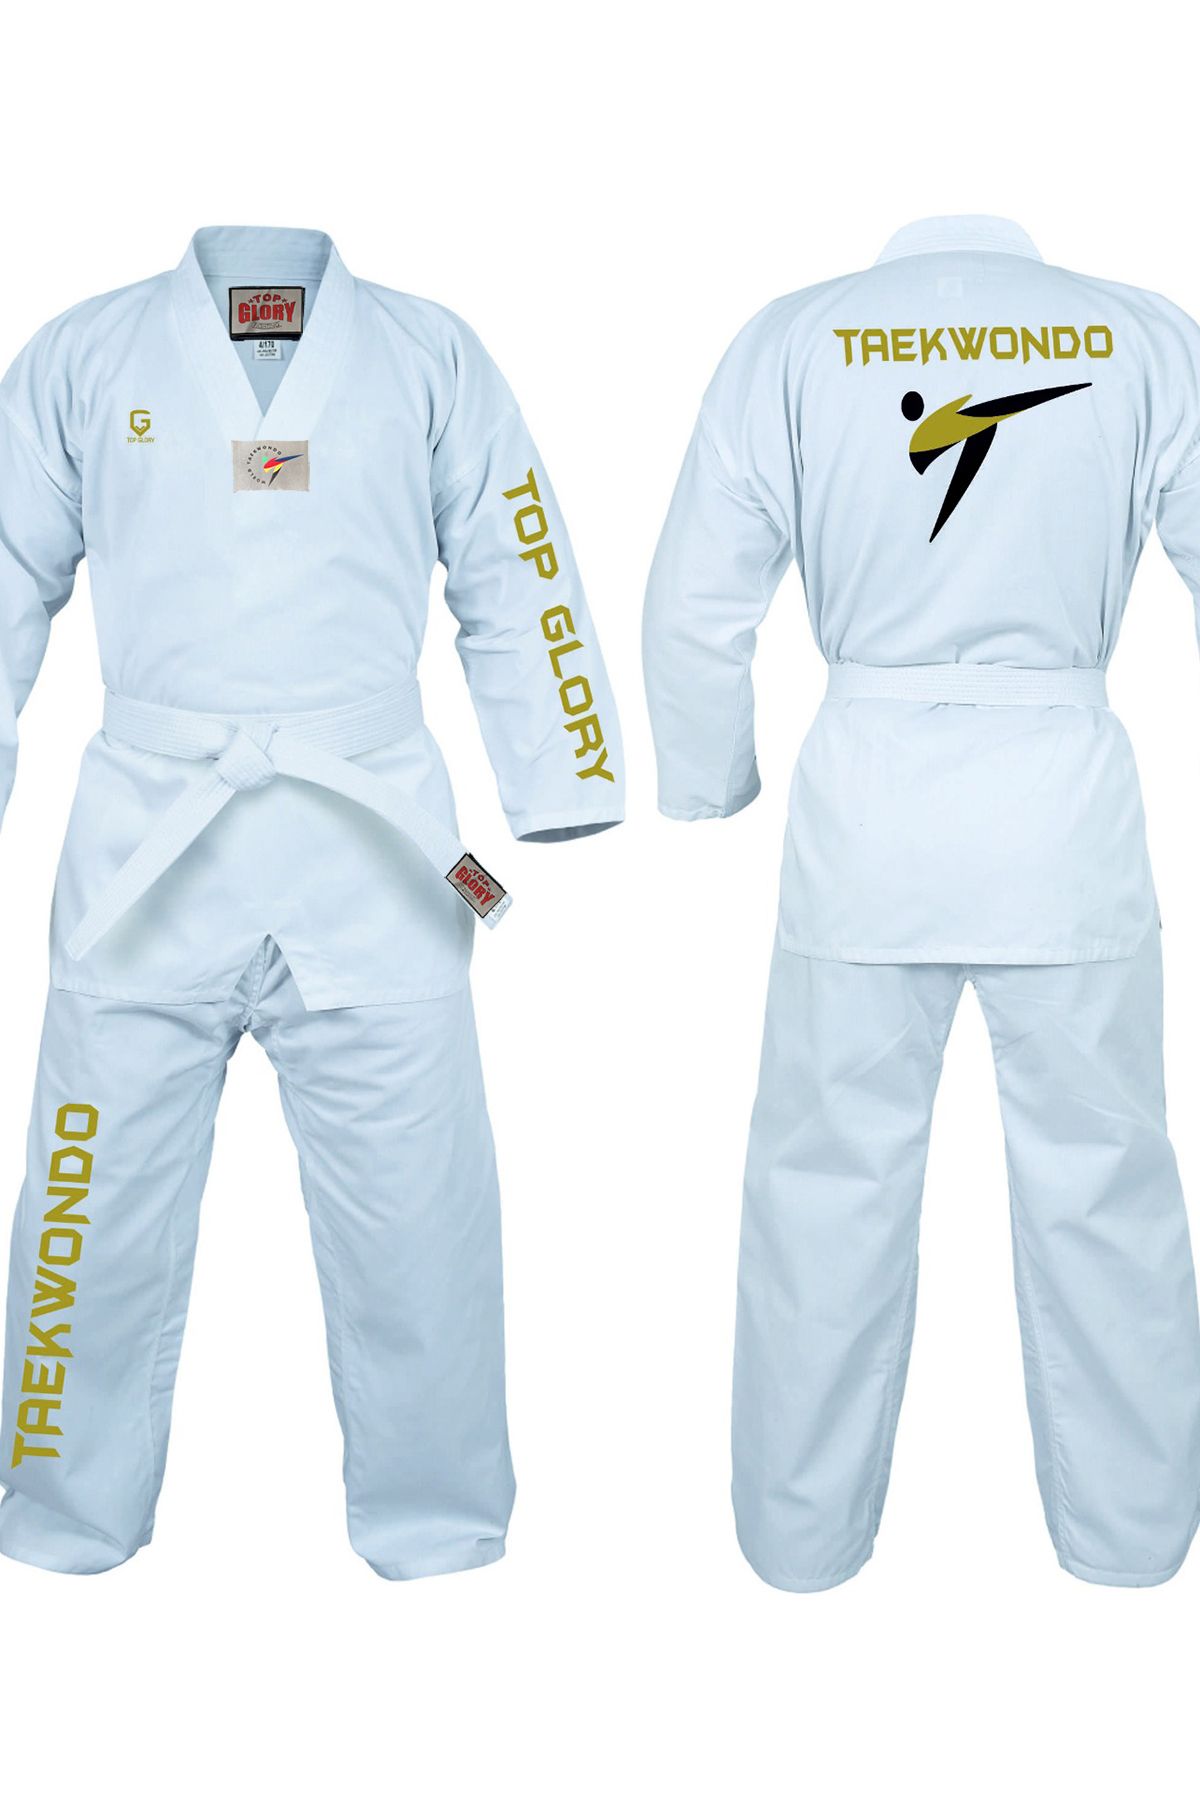 TOP GLORY Fitilli Golden Taekwondo Elbisesi Dobok